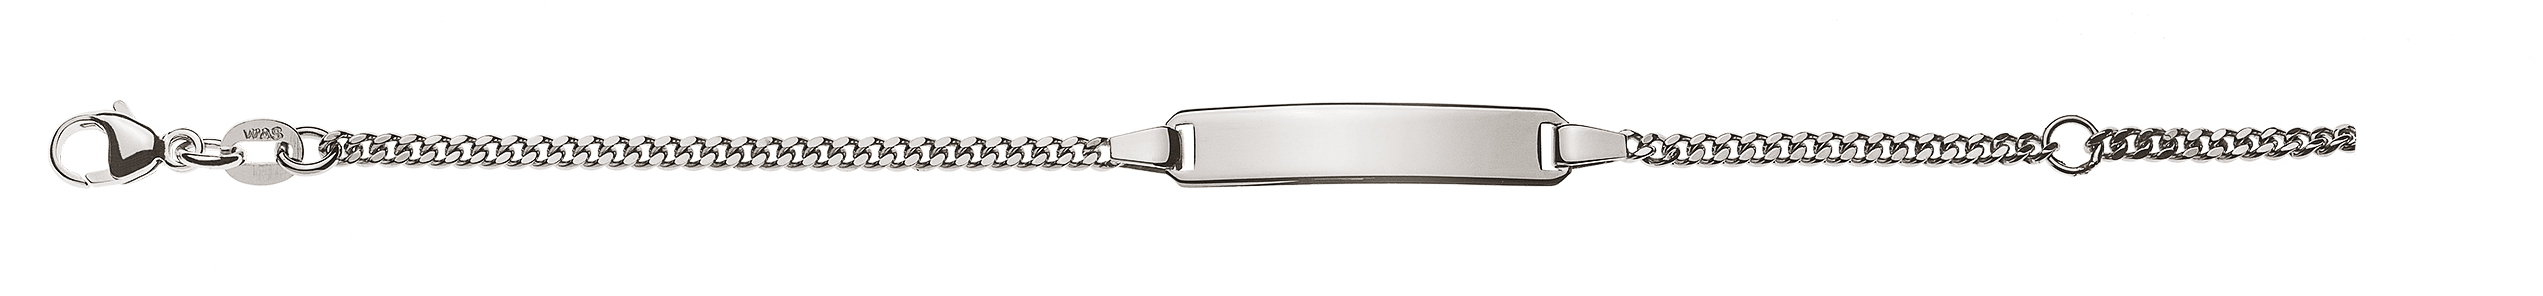 AURONOS Style ID-Bracelet en or blanc 9k Chaîne blindée polie 14cm